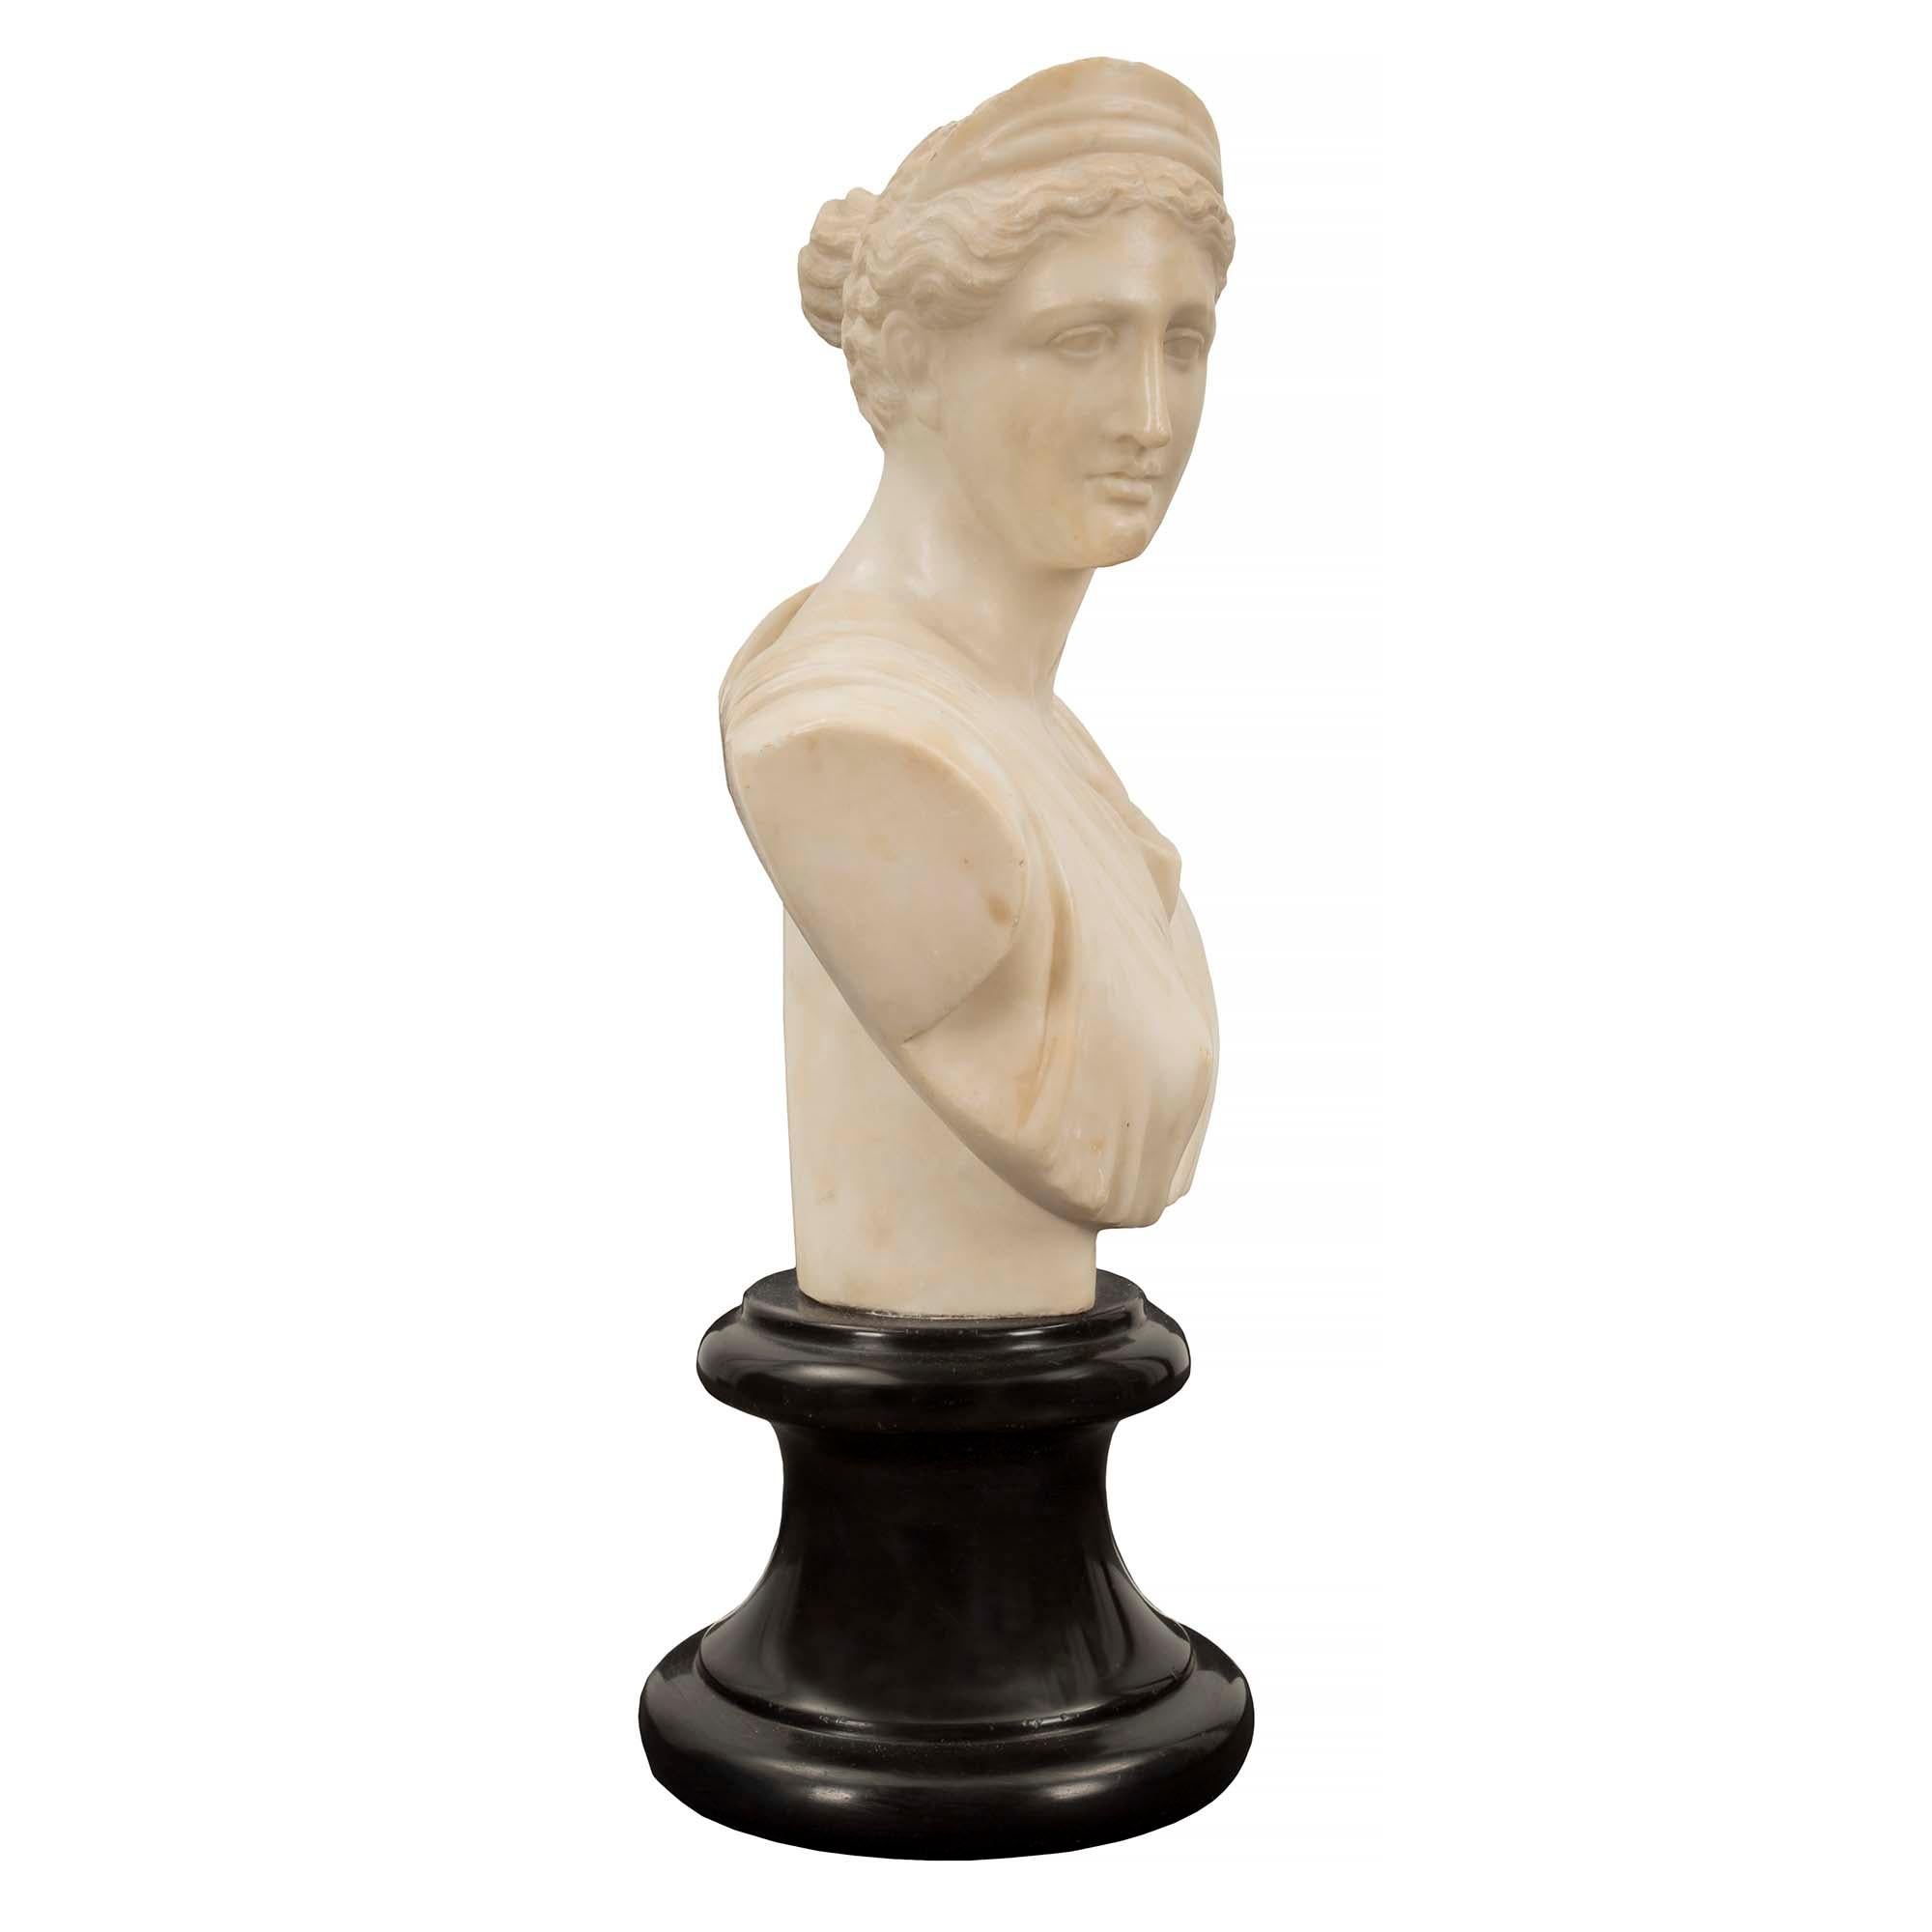 Eine elegante französische Alabasterbüste der Jägerin Diana aus dem 19. Jahrhundert. Die schöne Büste steht auf einem runden, schwarz gesprenkelten Sockel aus belgischem Marmor. Die außergewöhnlich gut ausgeführte Alabasterbüste stellt Diana die